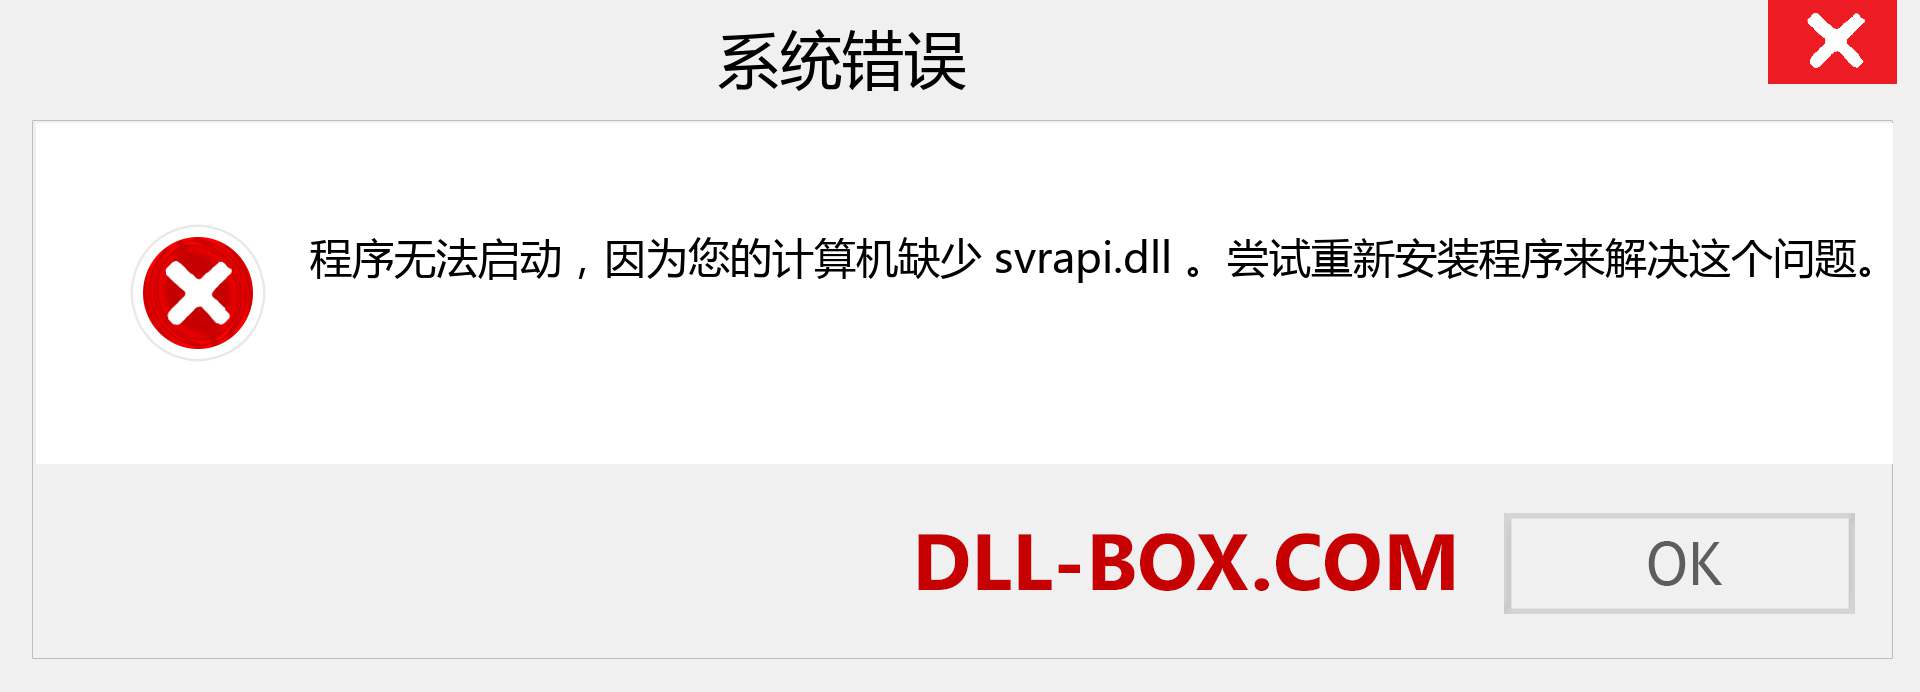 svrapi.dll 文件丢失？。 适用于 Windows 7、8、10 的下载 - 修复 Windows、照片、图像上的 svrapi dll 丢失错误